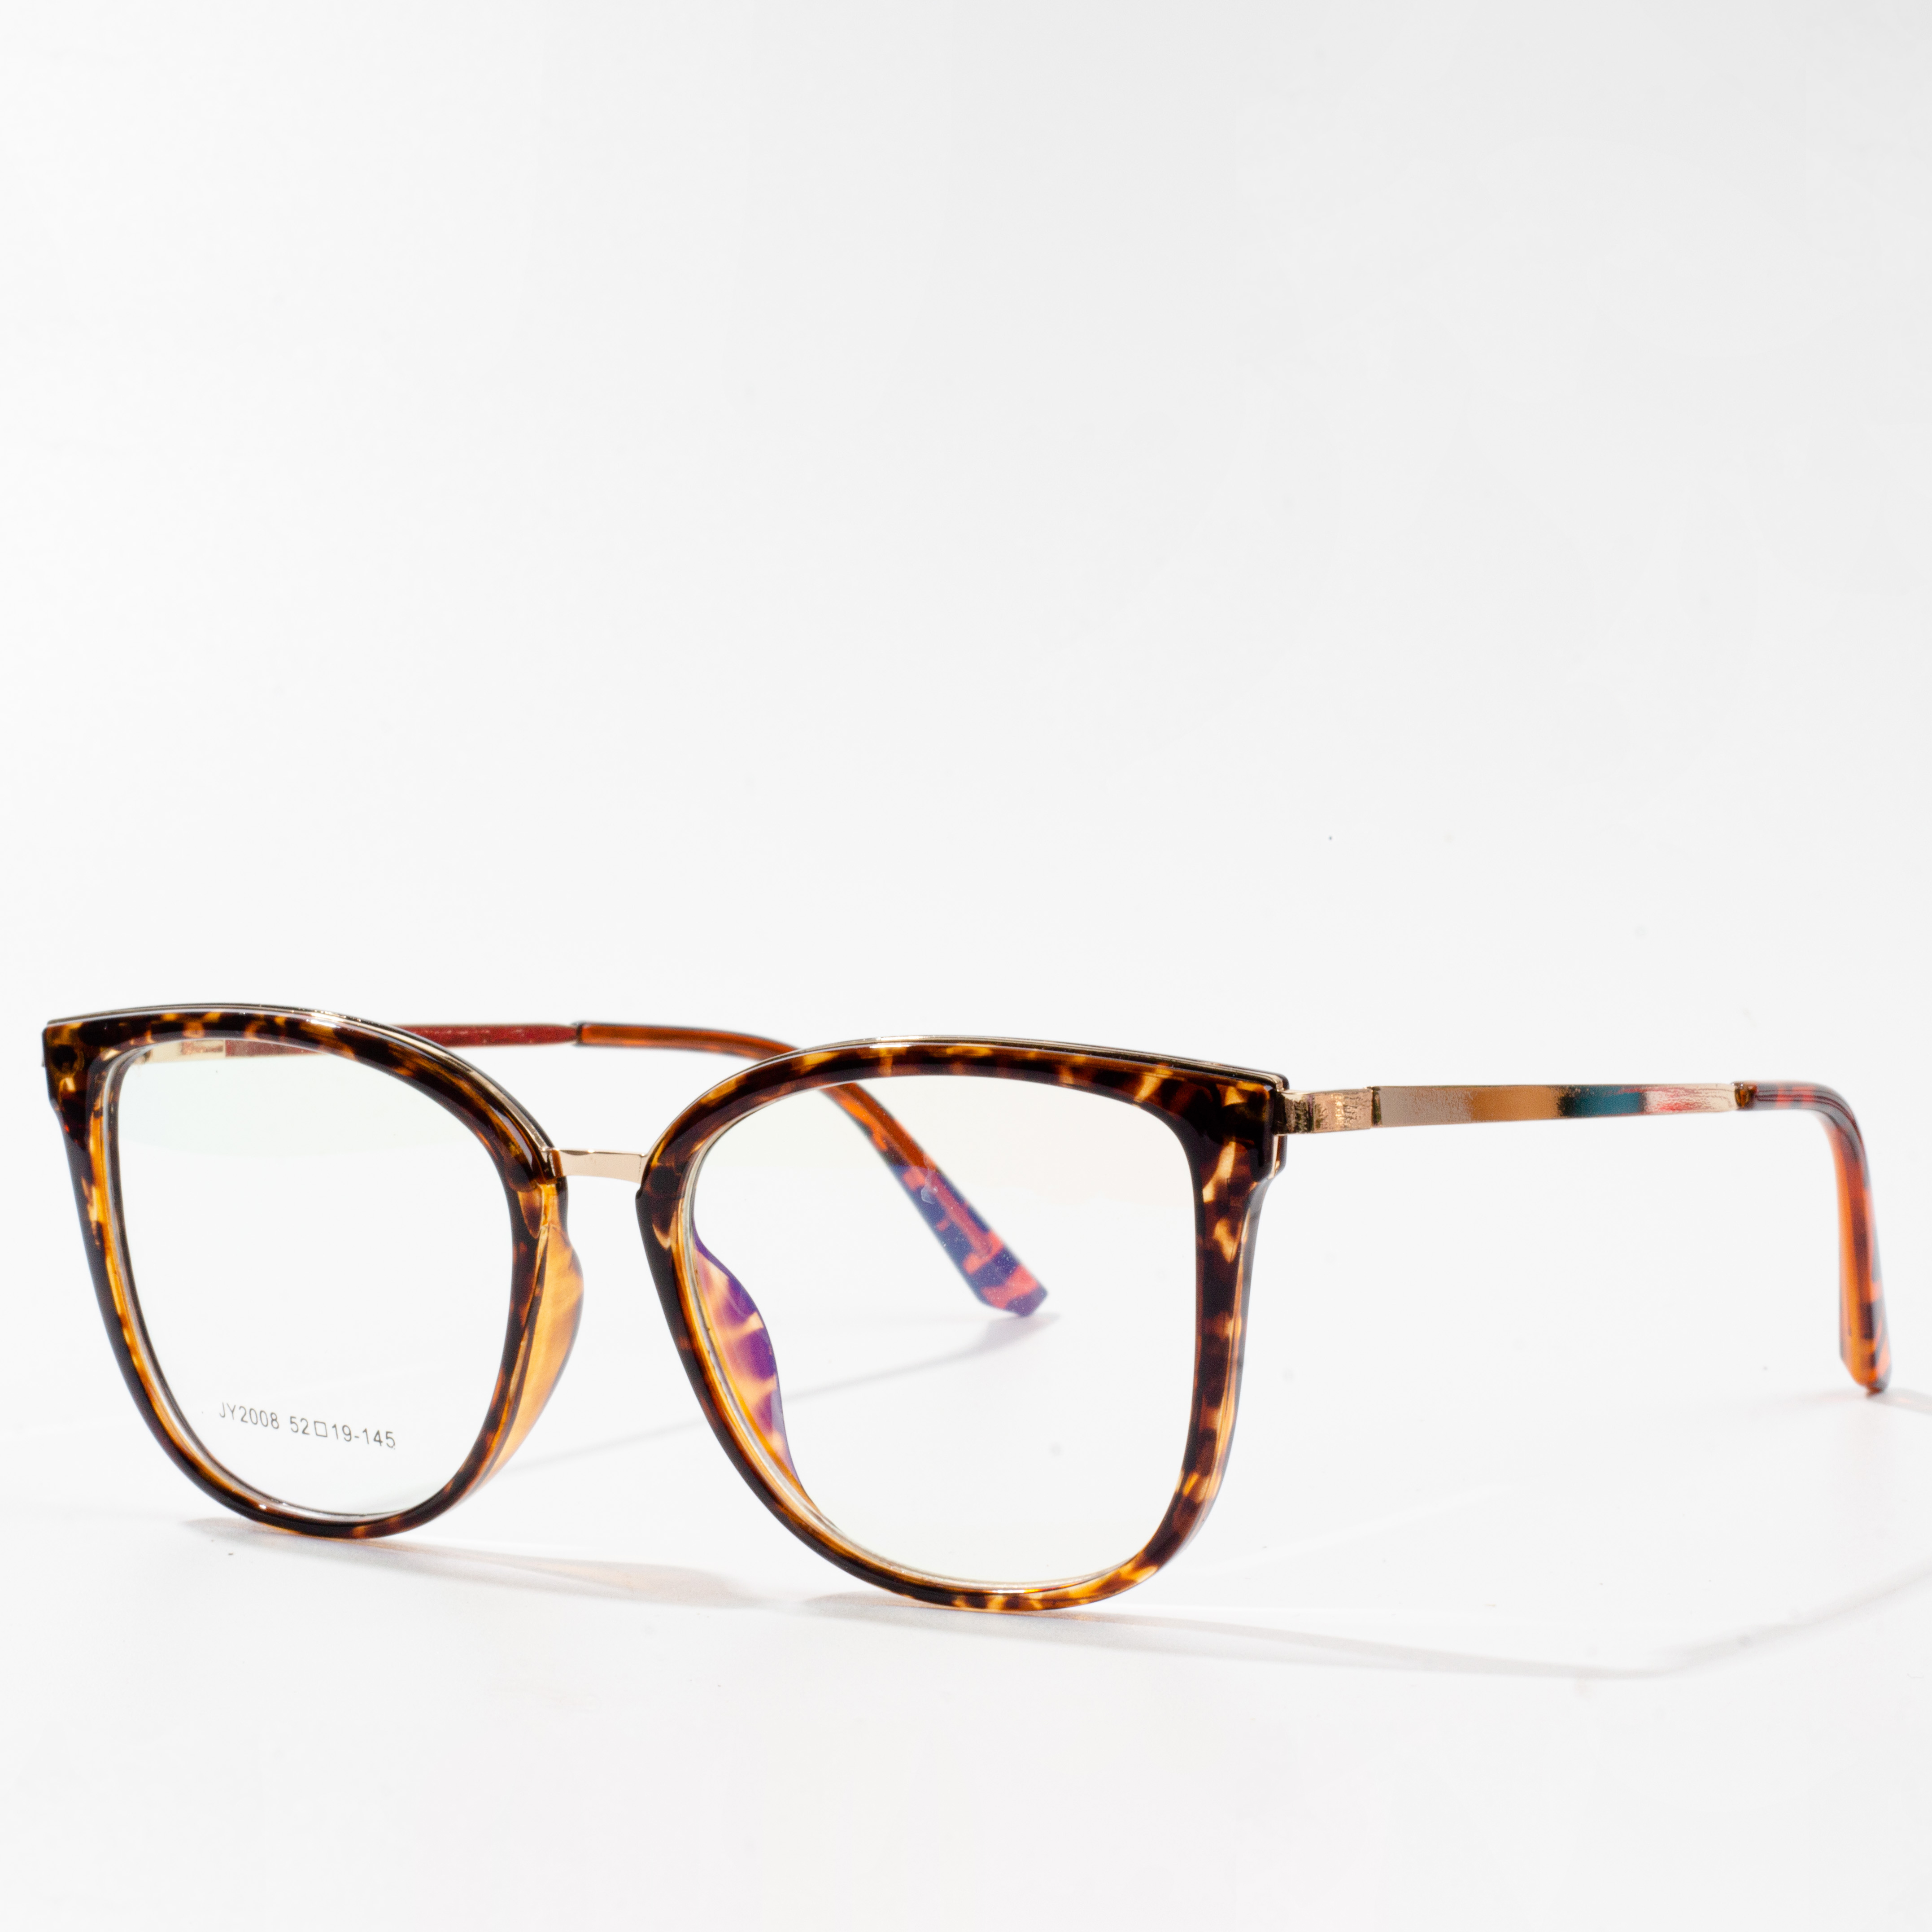 enw brand fframiau eyeglass